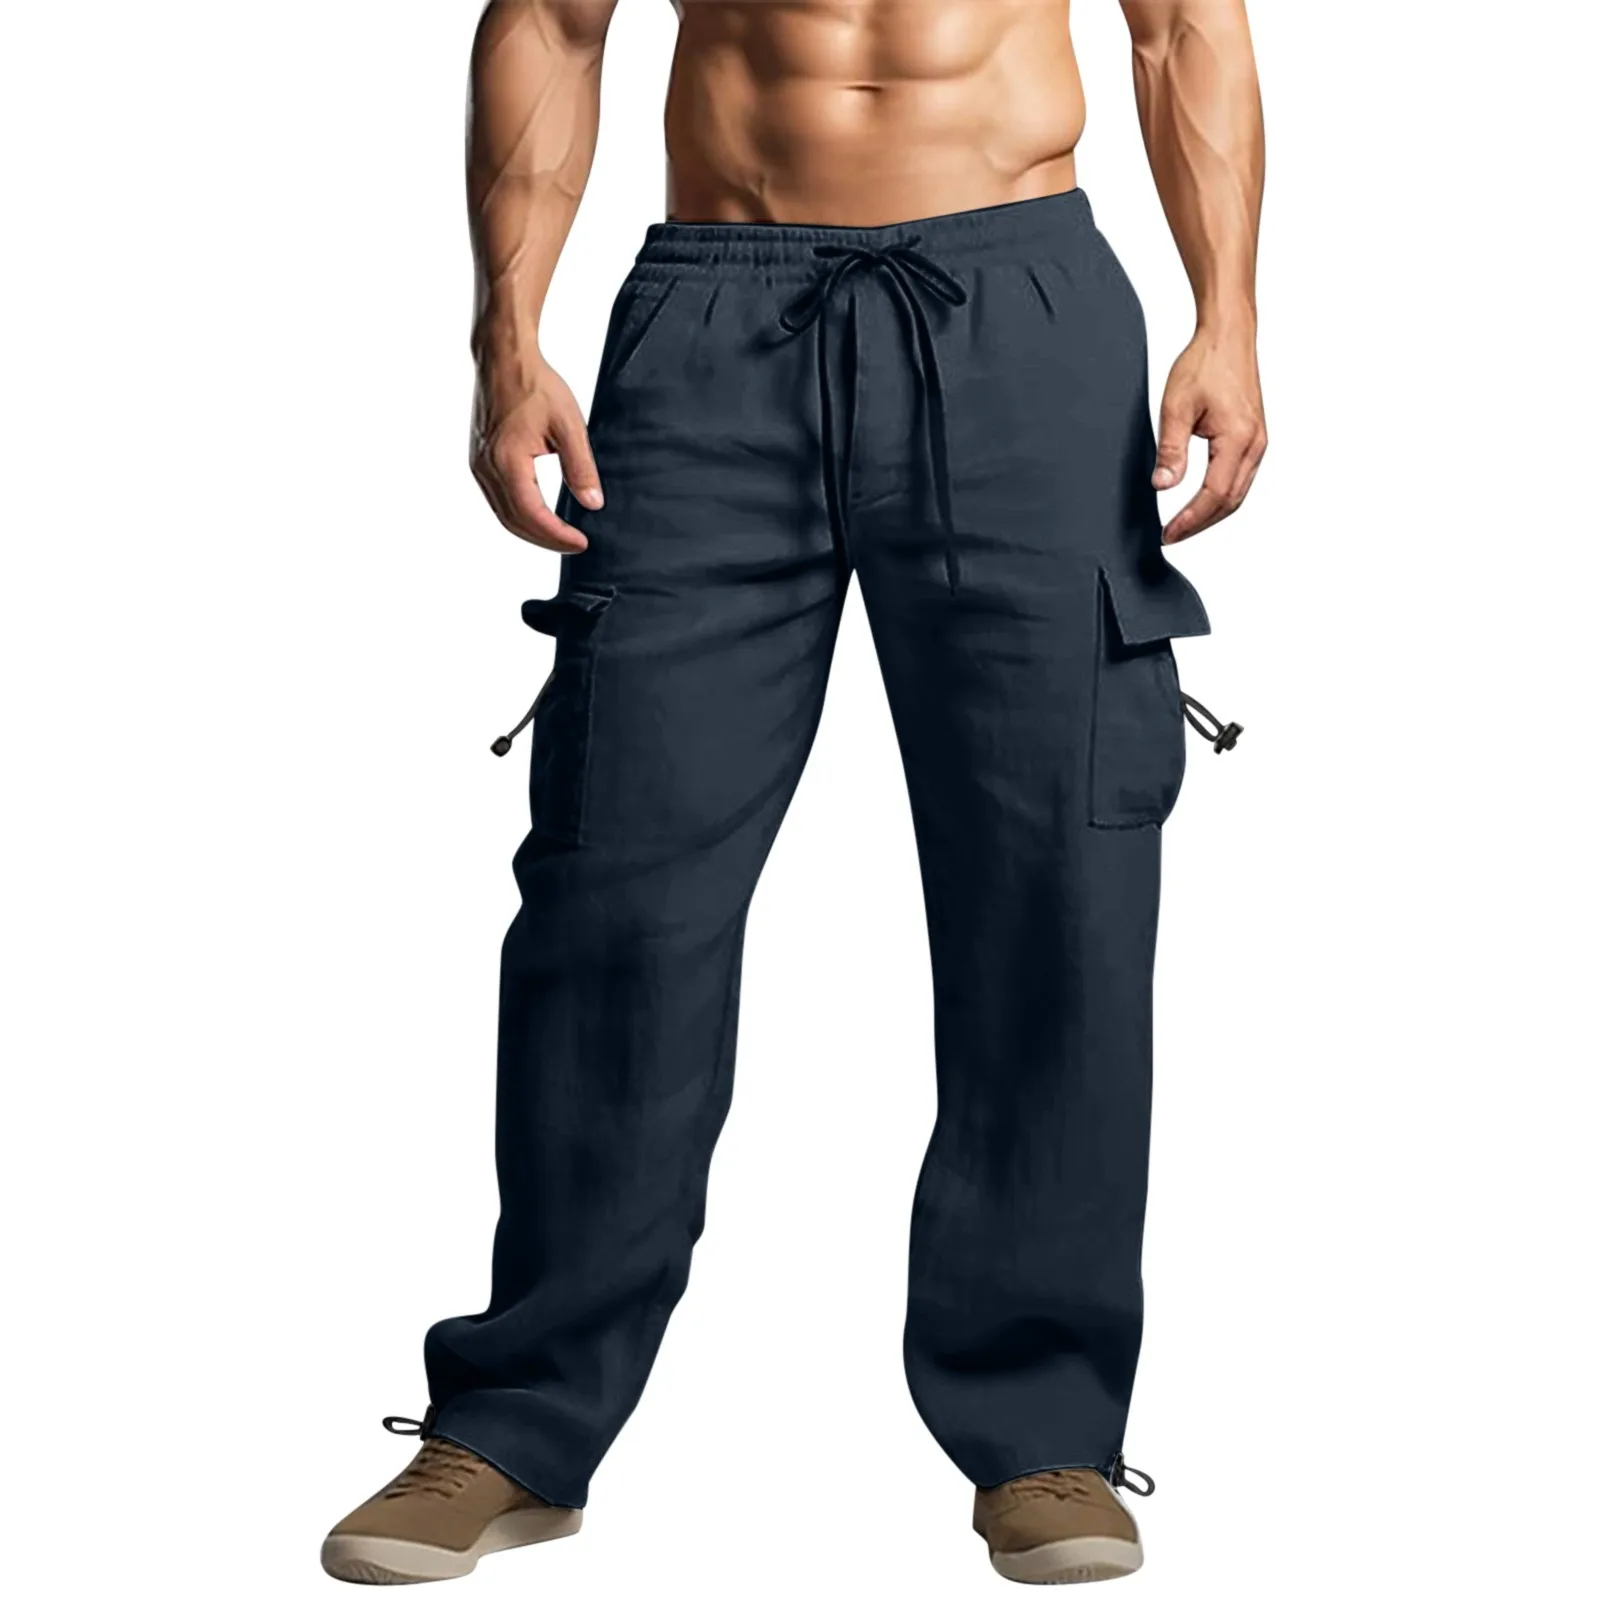 Брюки мужские для бега из хлопка и льна, Пляжные штаны, спортивные брюки спарашютом, длинные тренировочные штаны для мужчин, на лето